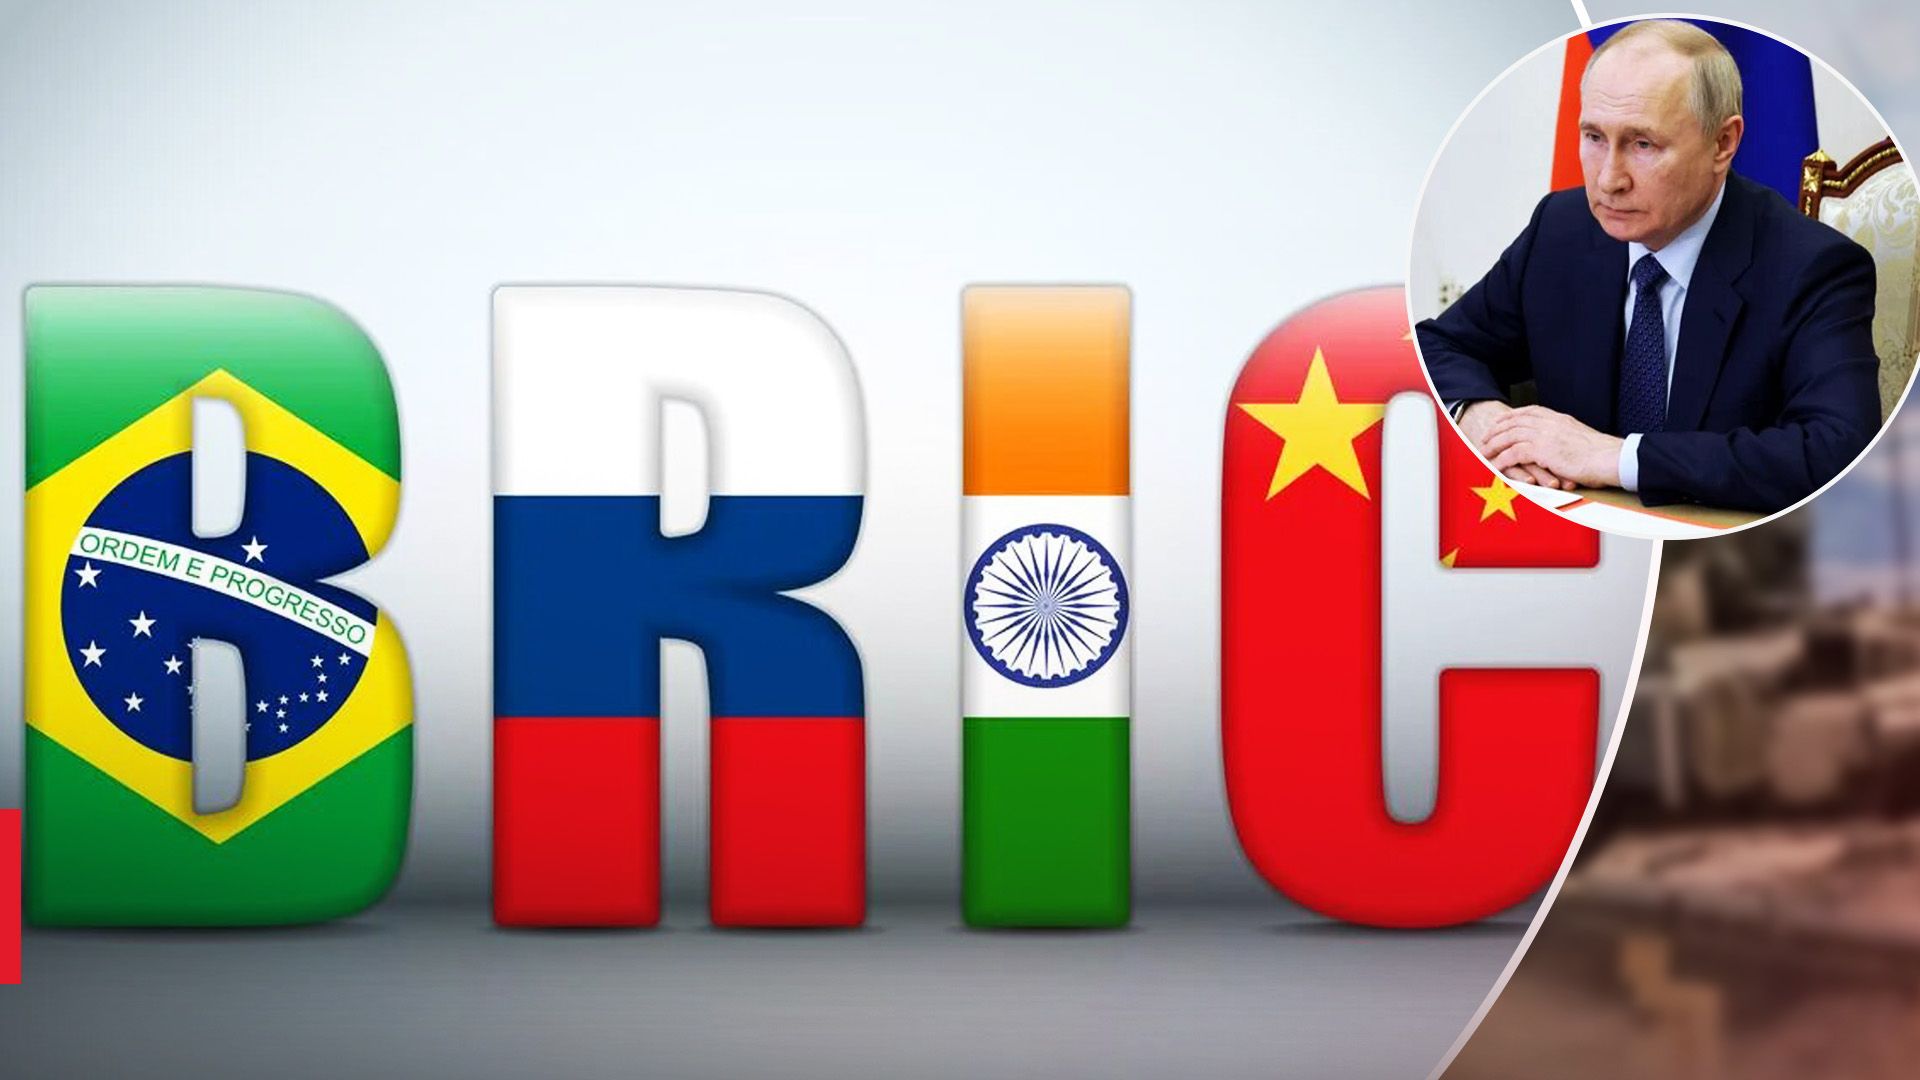 Путин может приехать на встречу глав МИД стран BRICS